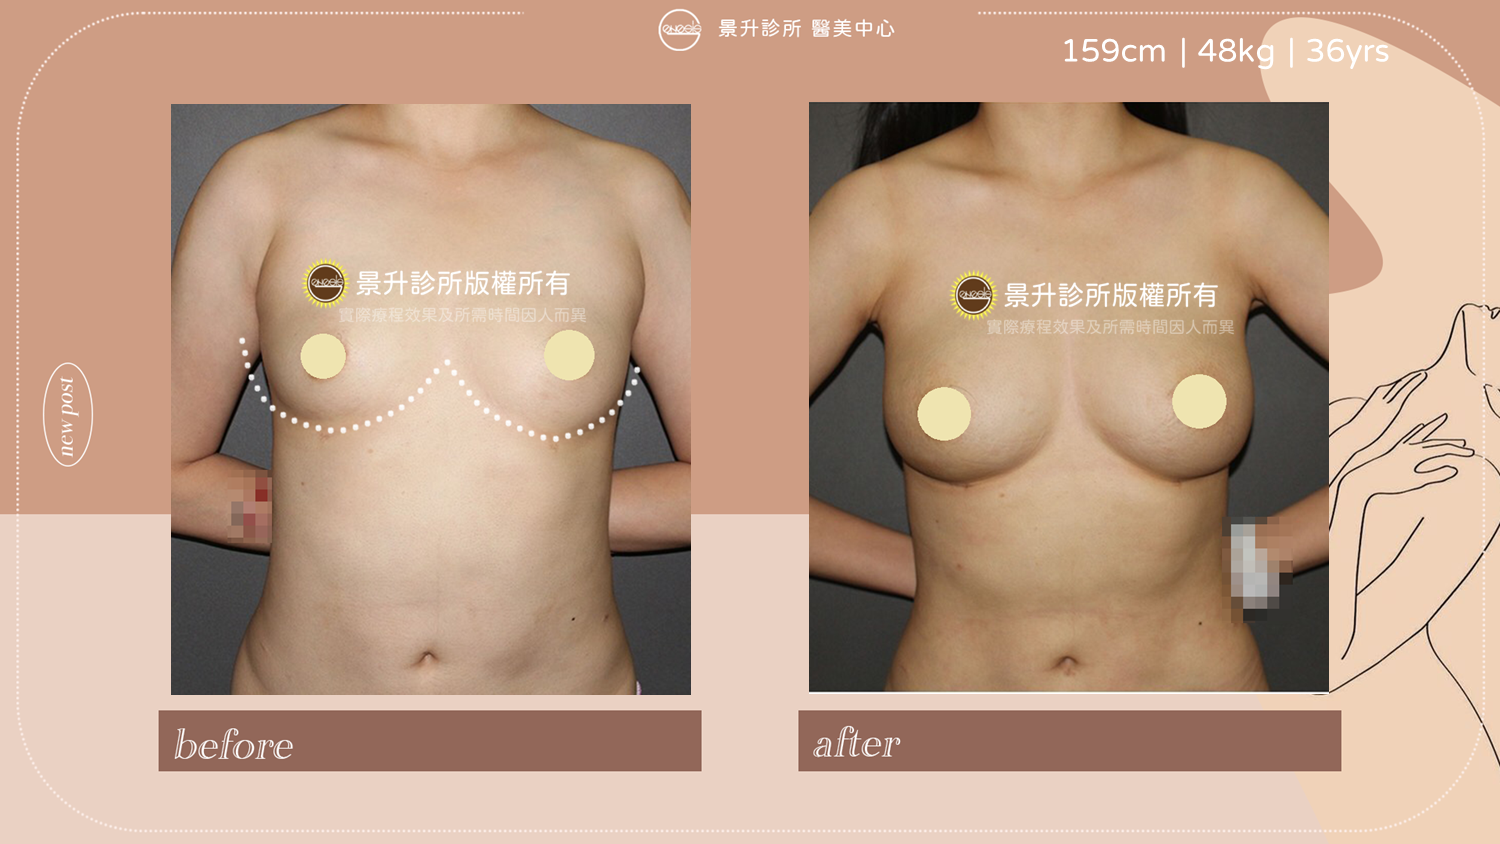 自體脂肪隆乳豐胸手術順帶雕塑體態的附加效果